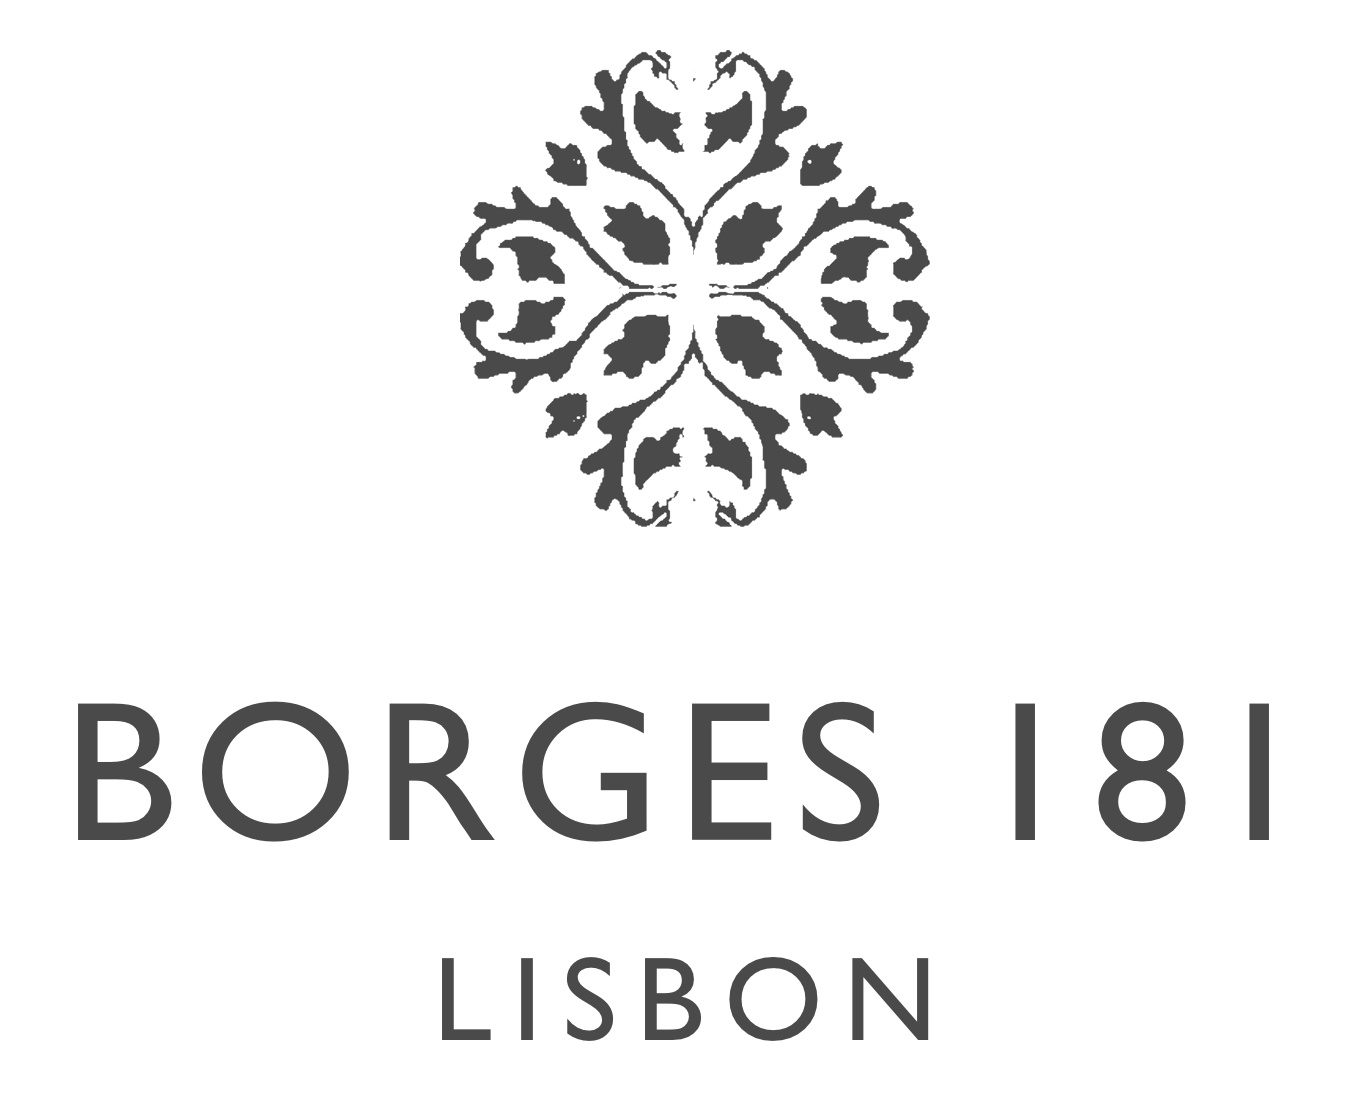 Borges 181 - Lisbon